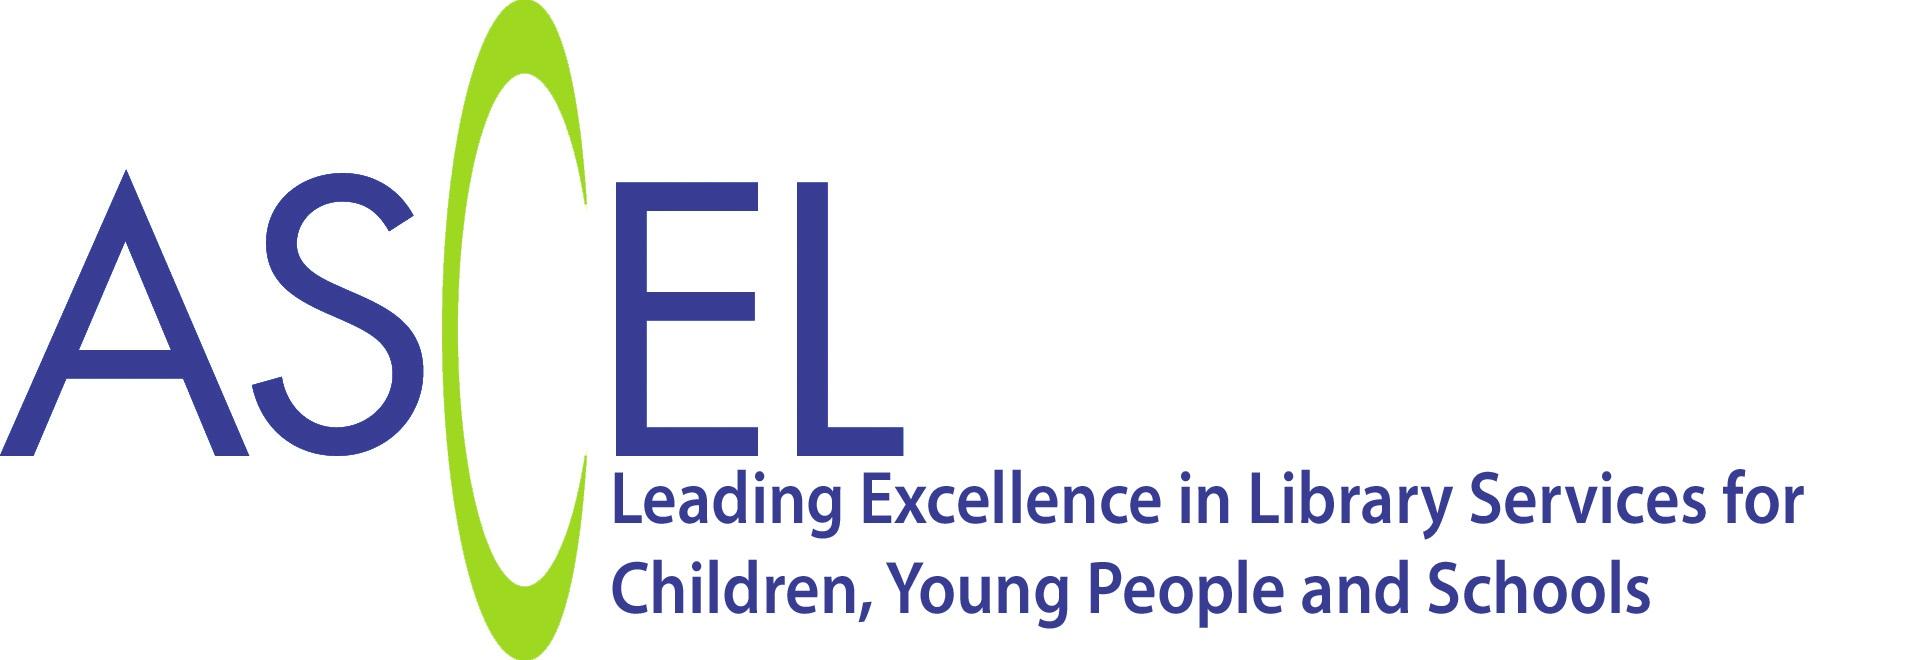 ASCEL logo